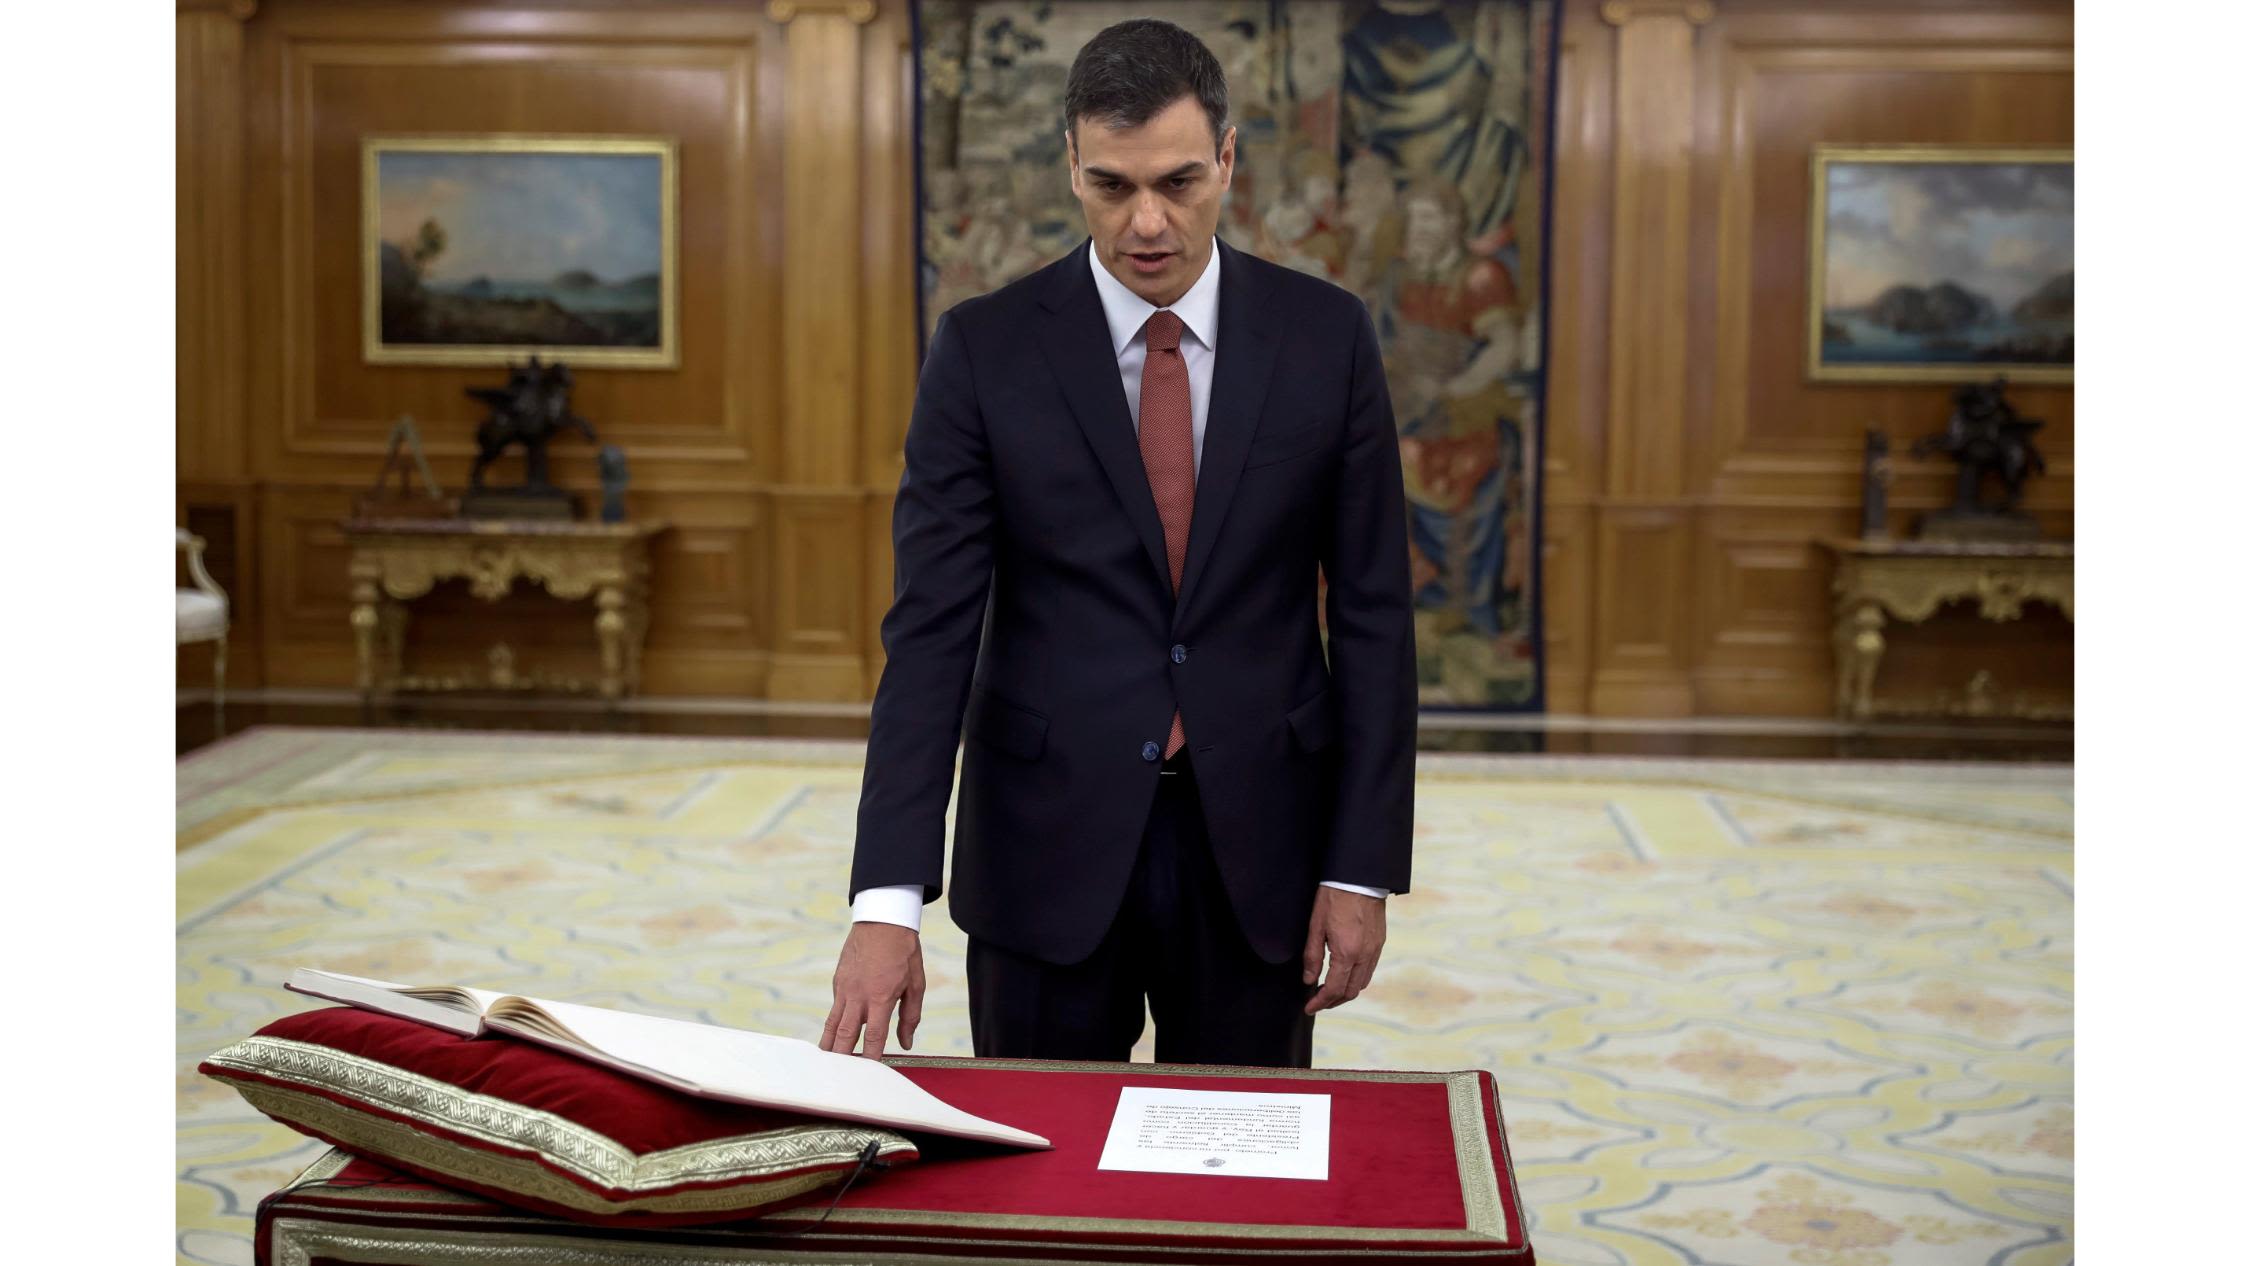 Pedro Sánchez sworn in as Spain's new Prime Minister | CNN